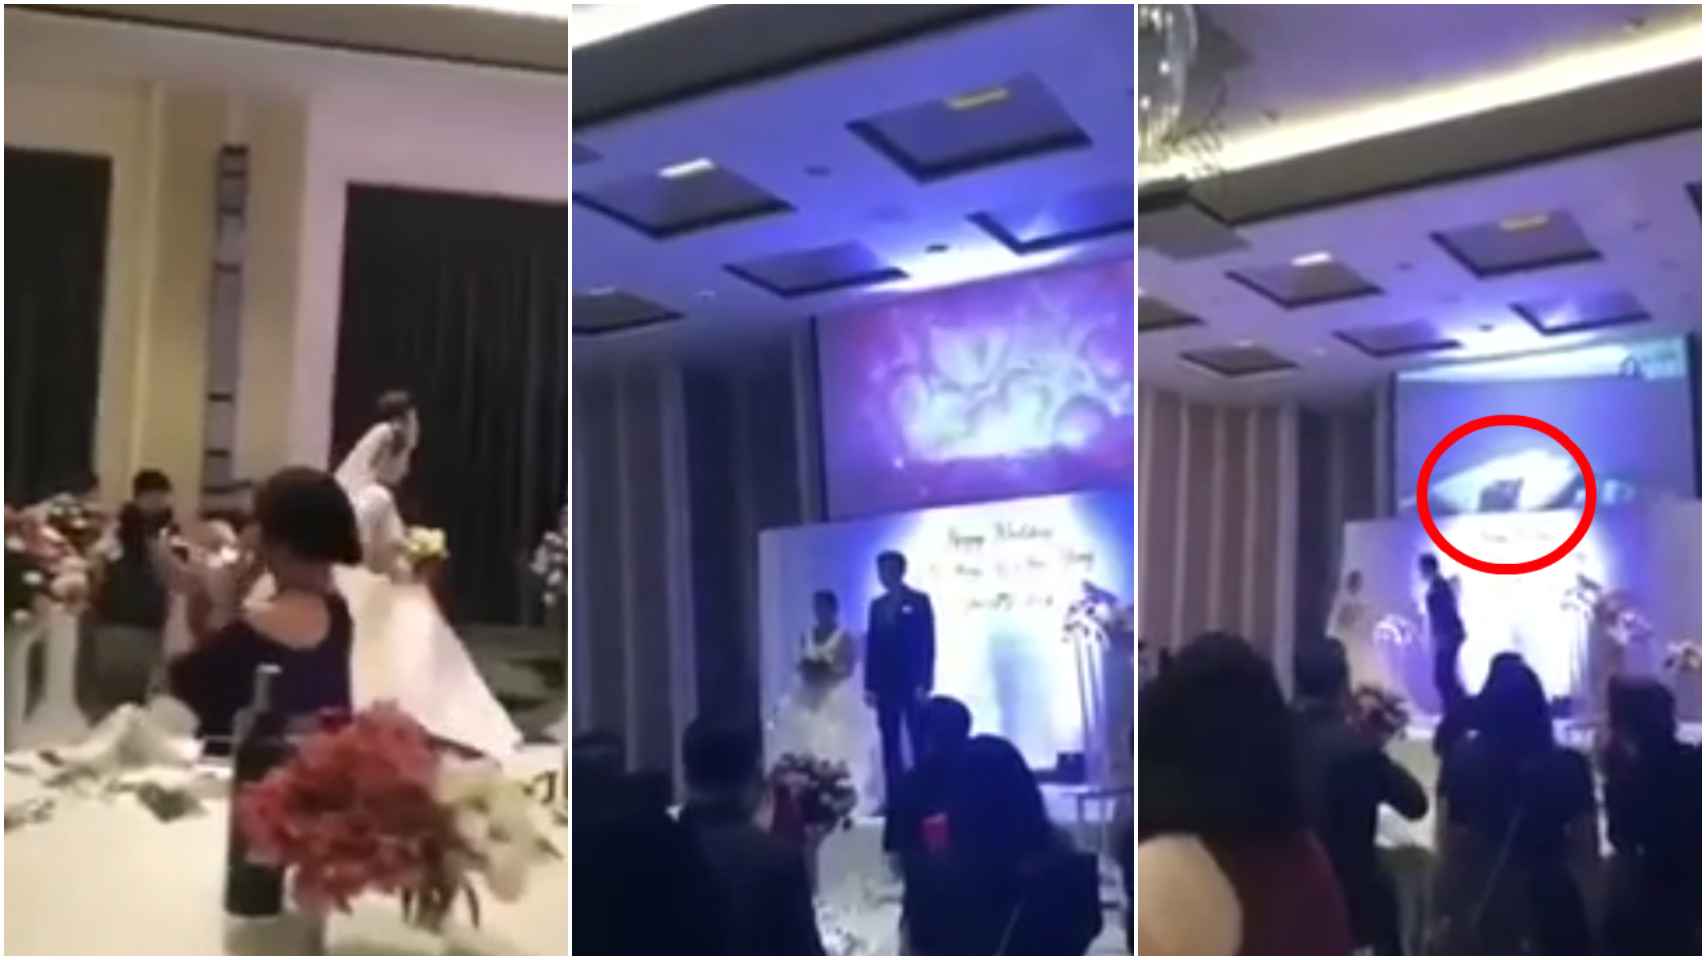 La venganza de un recién casado pone en su boda el vídeo de su novia siéndole infiel con su cuñado imagen